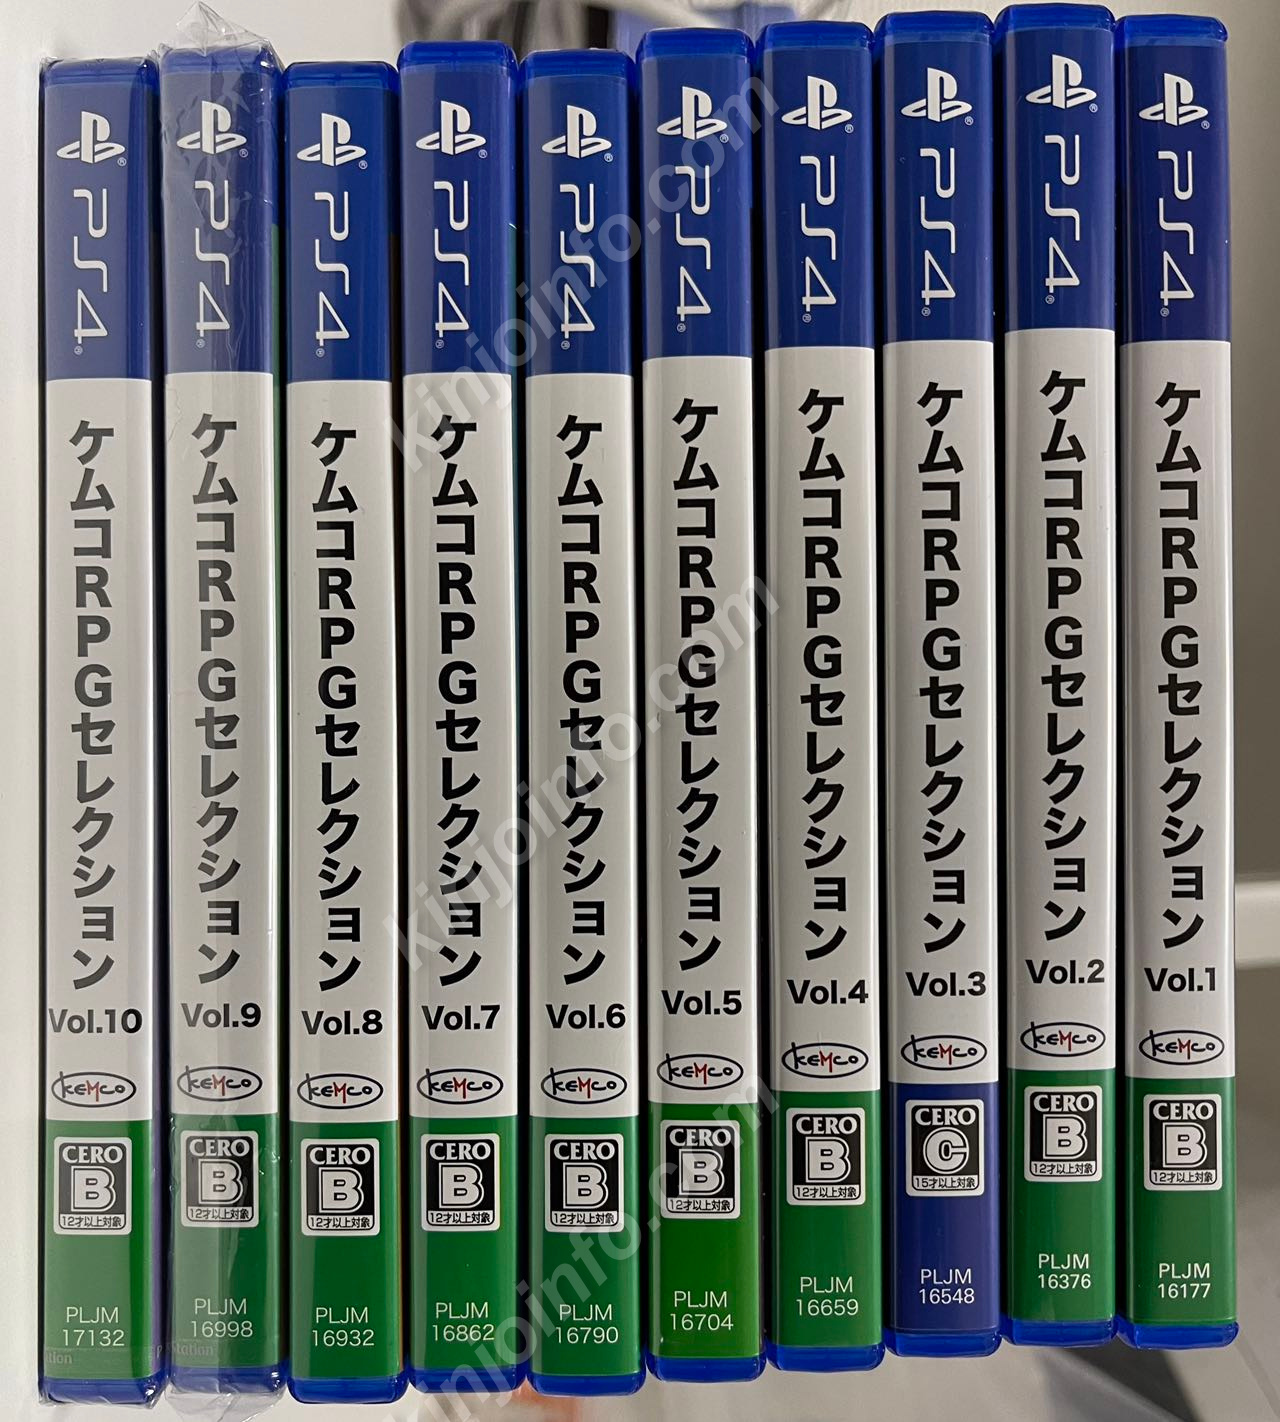 ケムコRPGセレクション Vol.1〜10セット【中古美品・新品未開封・PS4日本版】